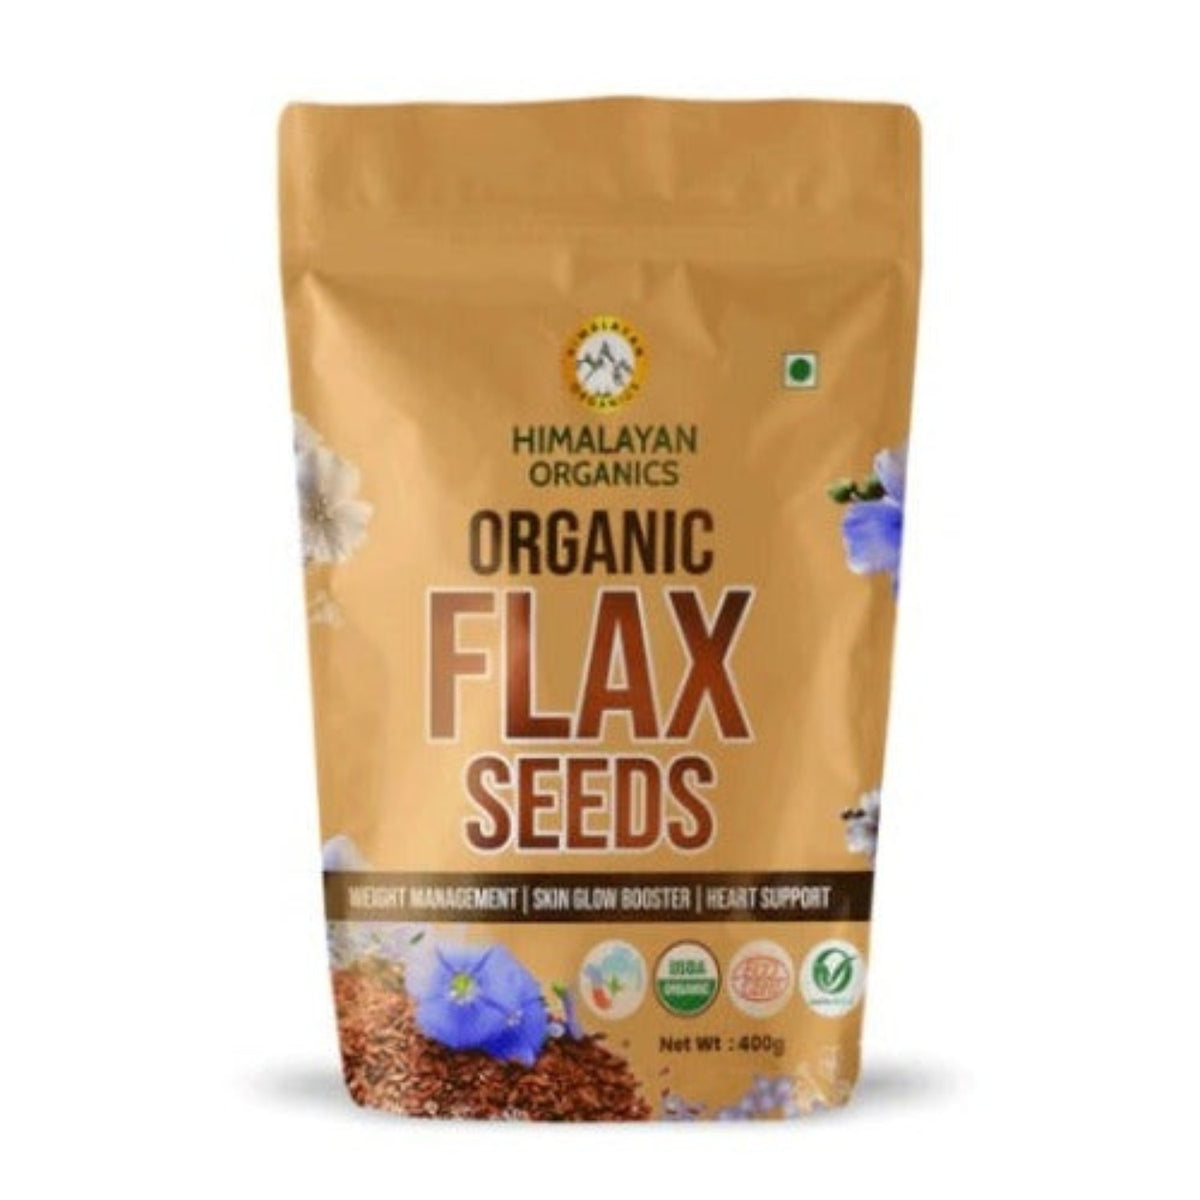 Органические семена льна, сертифицированные Himalayan Organics, обогащенные омега-3 и цинком для здорового контроля веса и поддержки здоровья сердца, 400 г